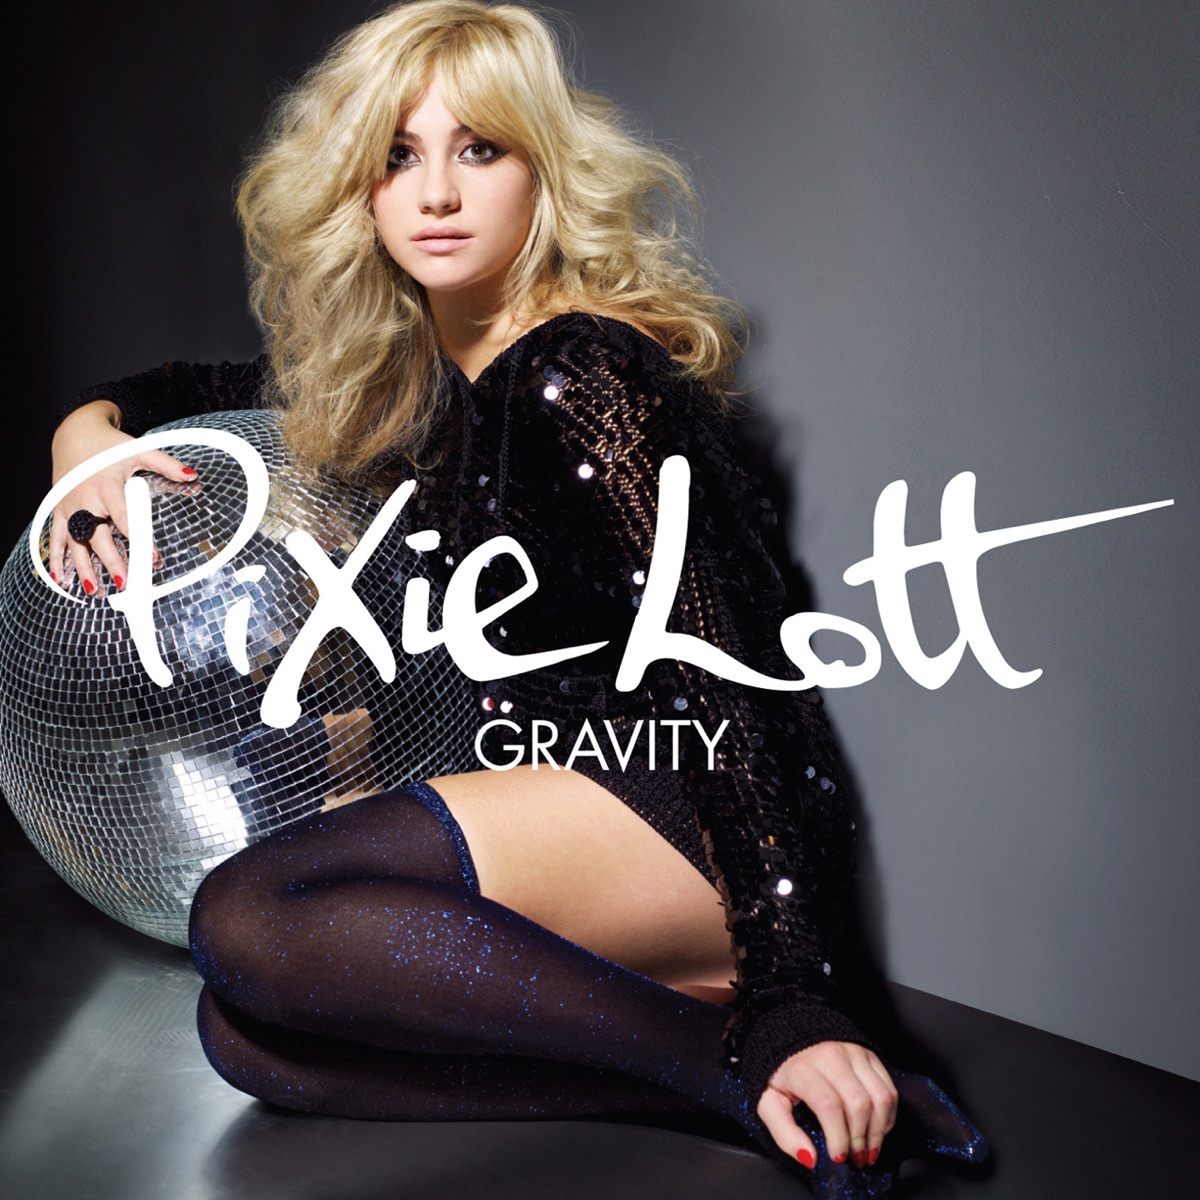 Pixie Lott Gravity cover artwork